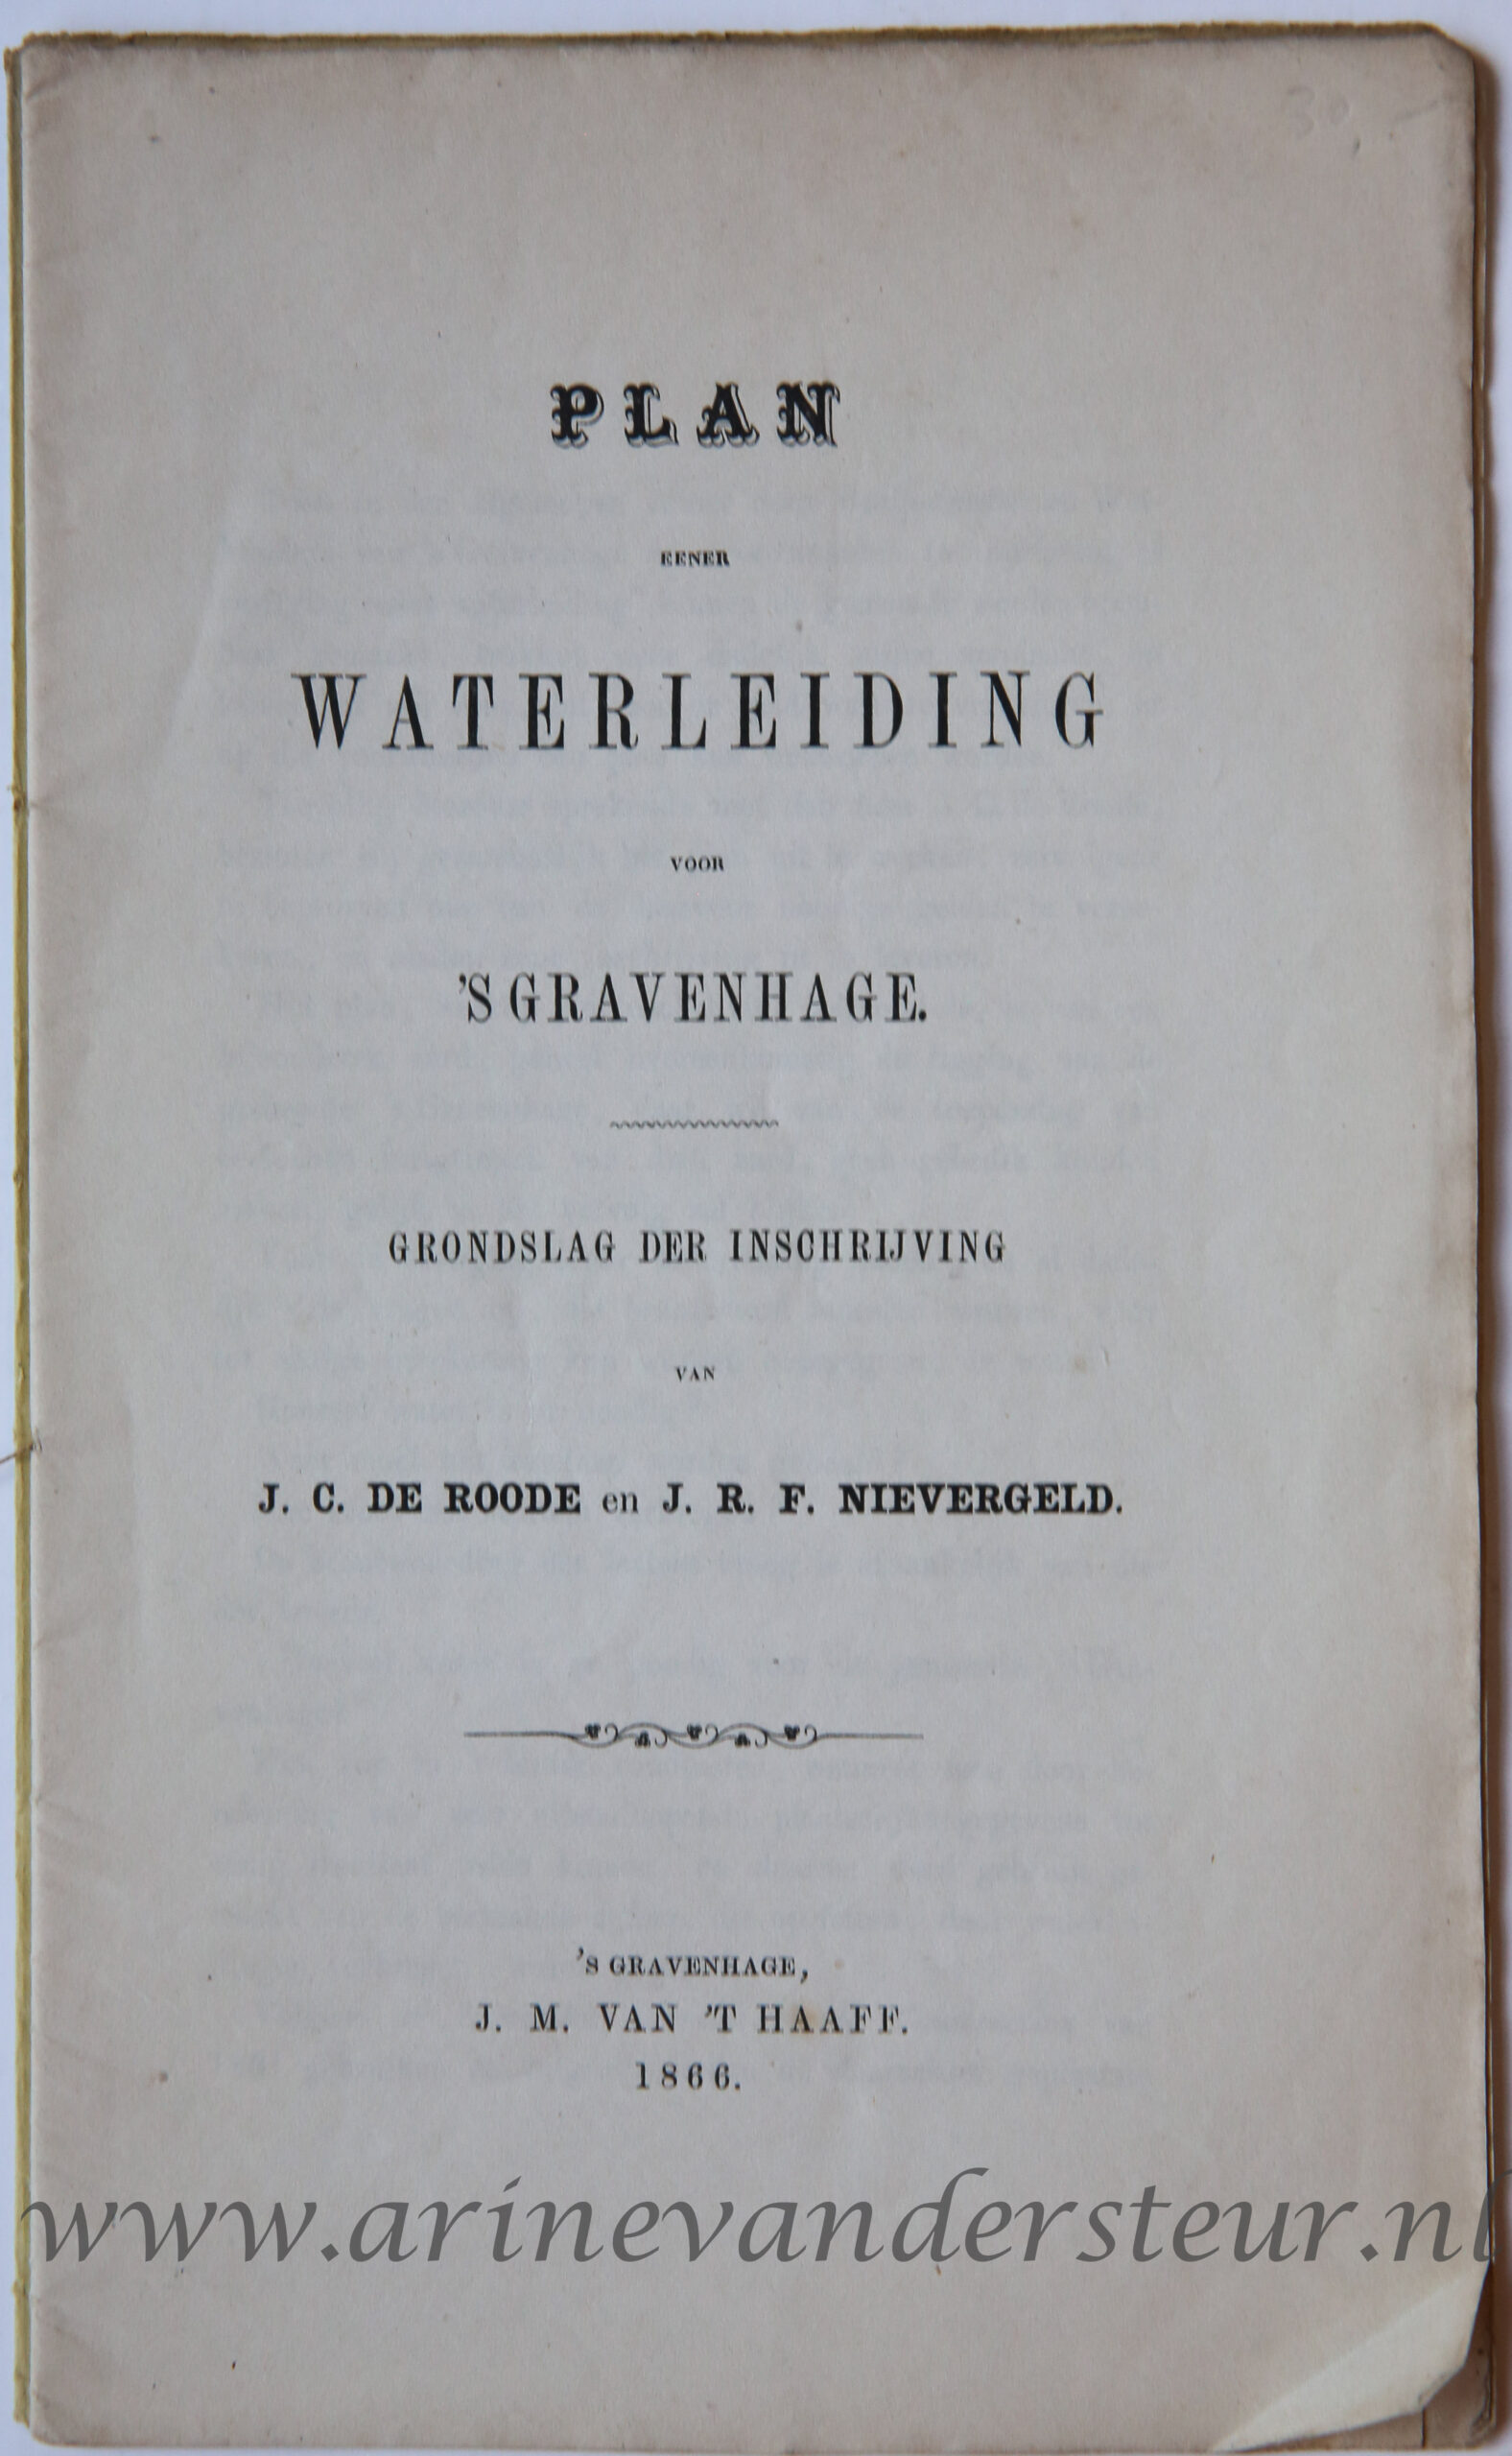 Roode, J.C. de; Nievergeld, J.R.F. - [The Hague, Water management] Plan eener waterleiding voor 's Gravenhage, Grondslag der inschrijving van J.C. de Roode en J.R.F. Nievergeld, 's Gravenhage J.M. van 't Haff 1866, 23 pp. Rare.)